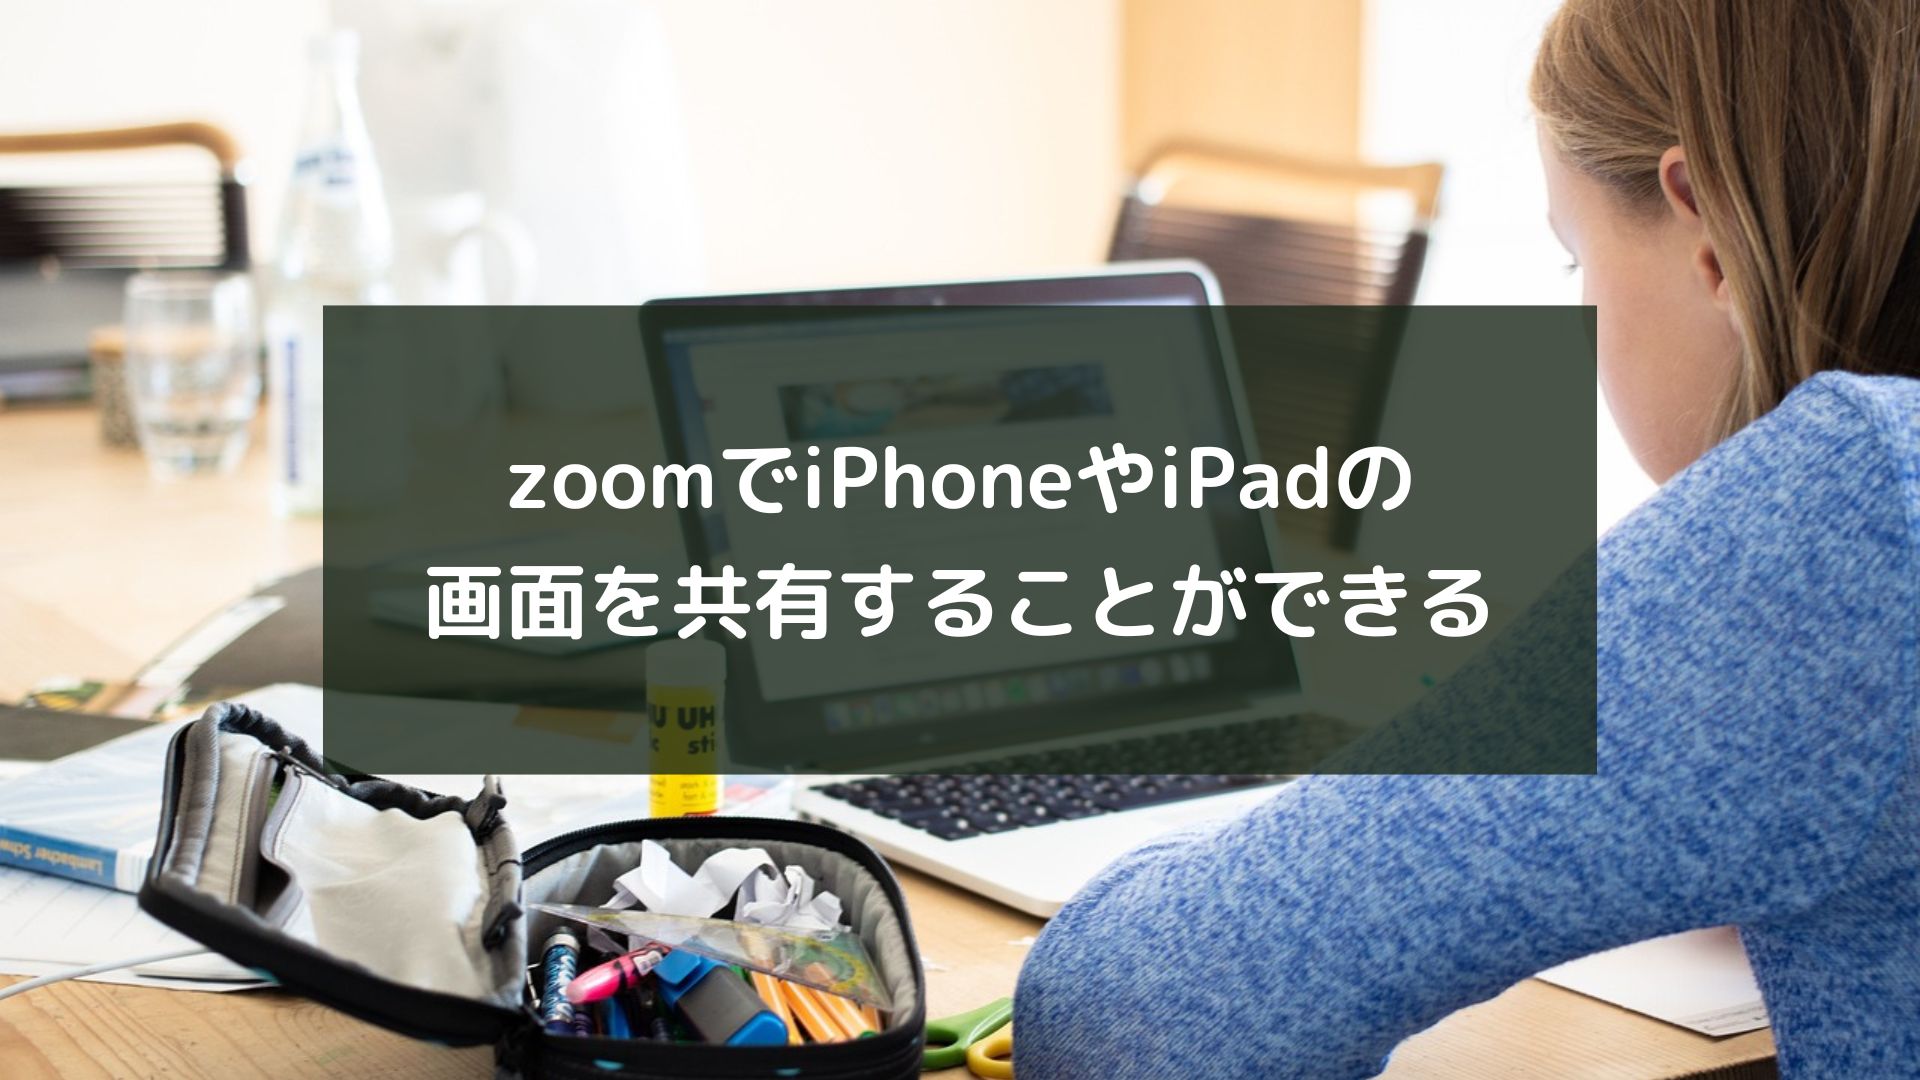 zoomでiPhoneやiPadの画面を共有することができる